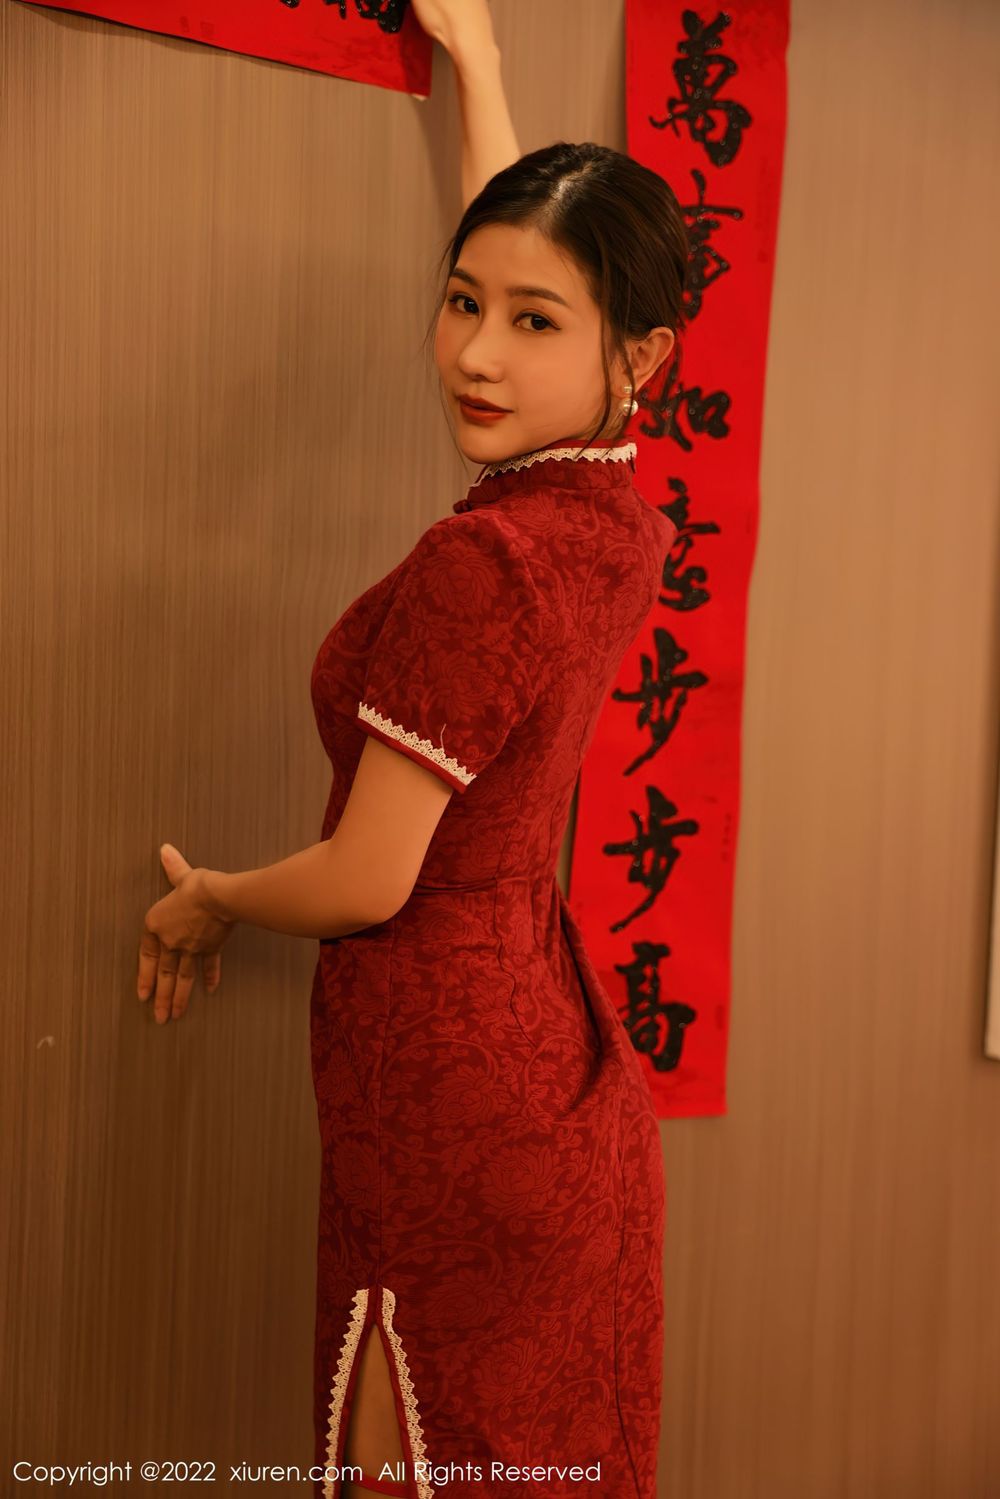 美女模特尹甜甜 - 旗袍装束+新年主题性感写真